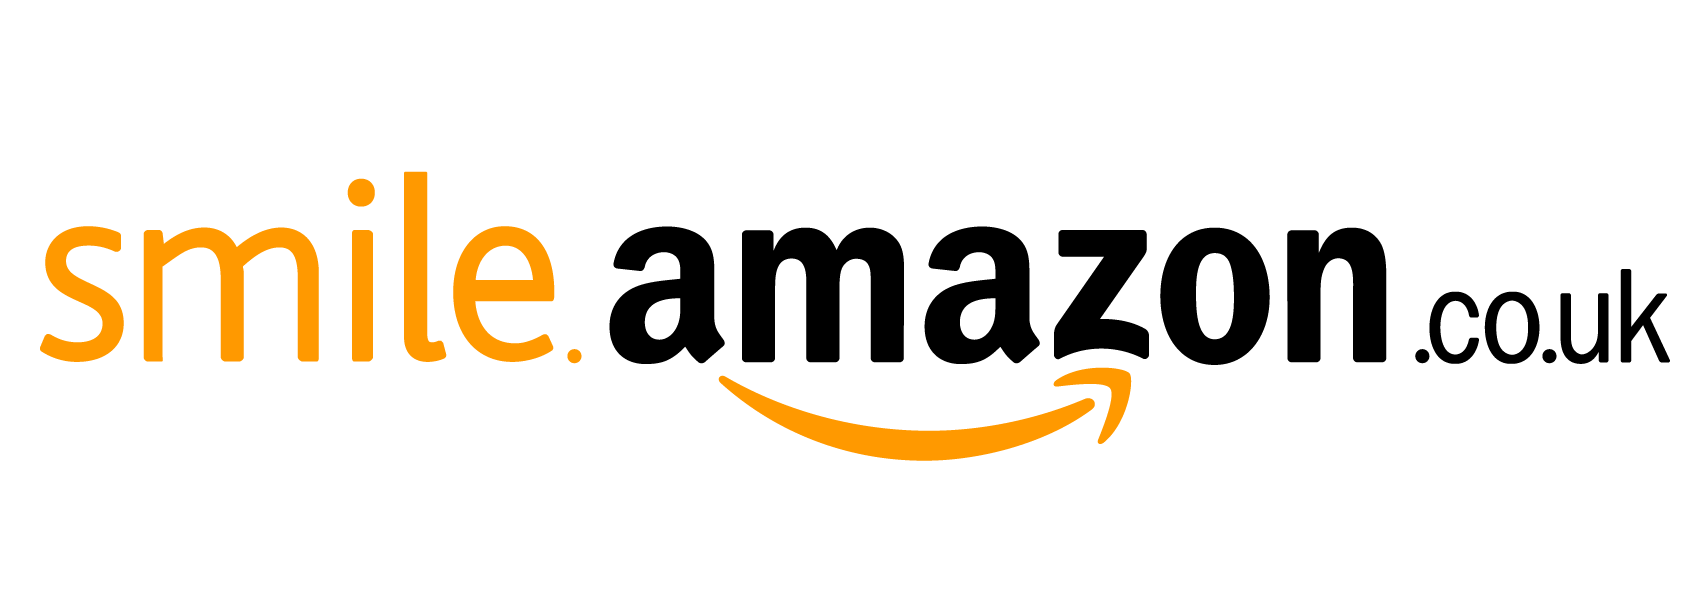 Amazon Smile button